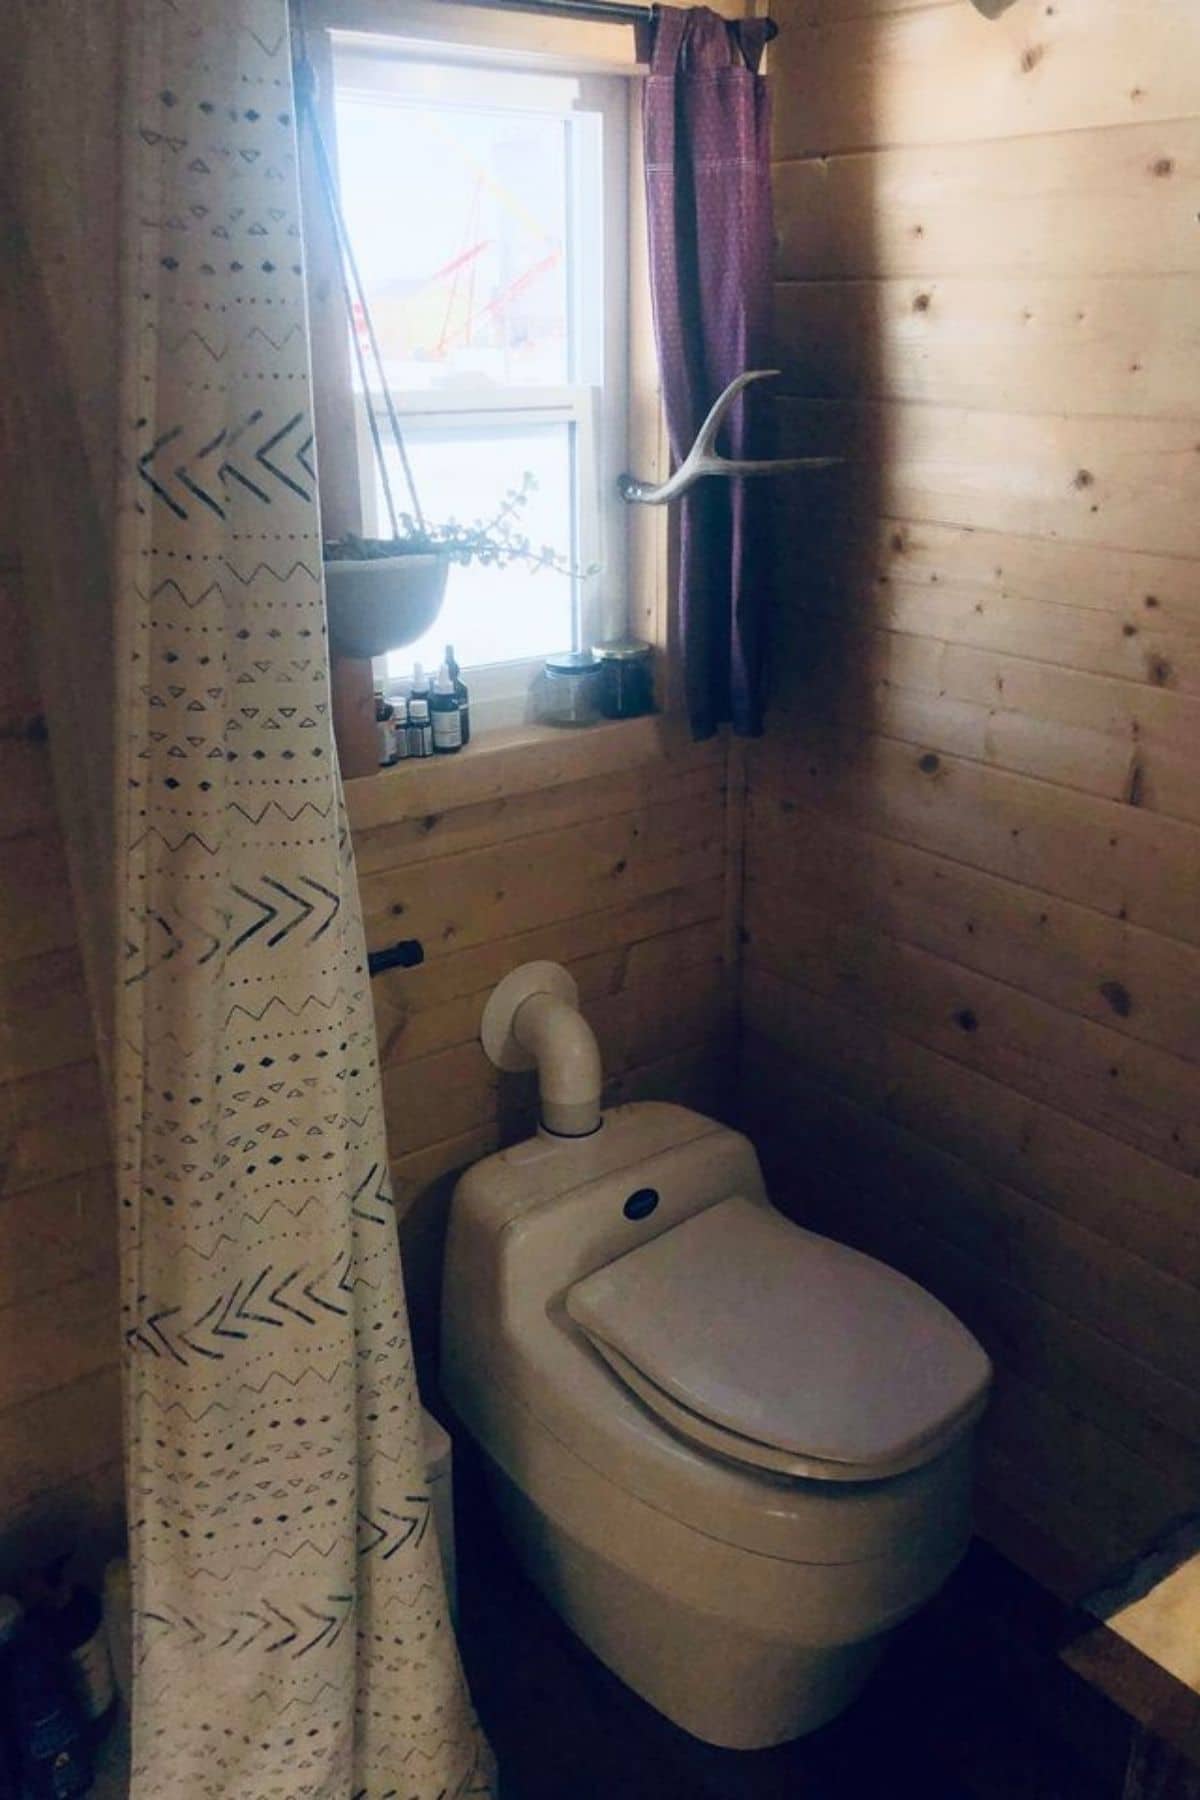 Compost toilet under window in wood bathroom